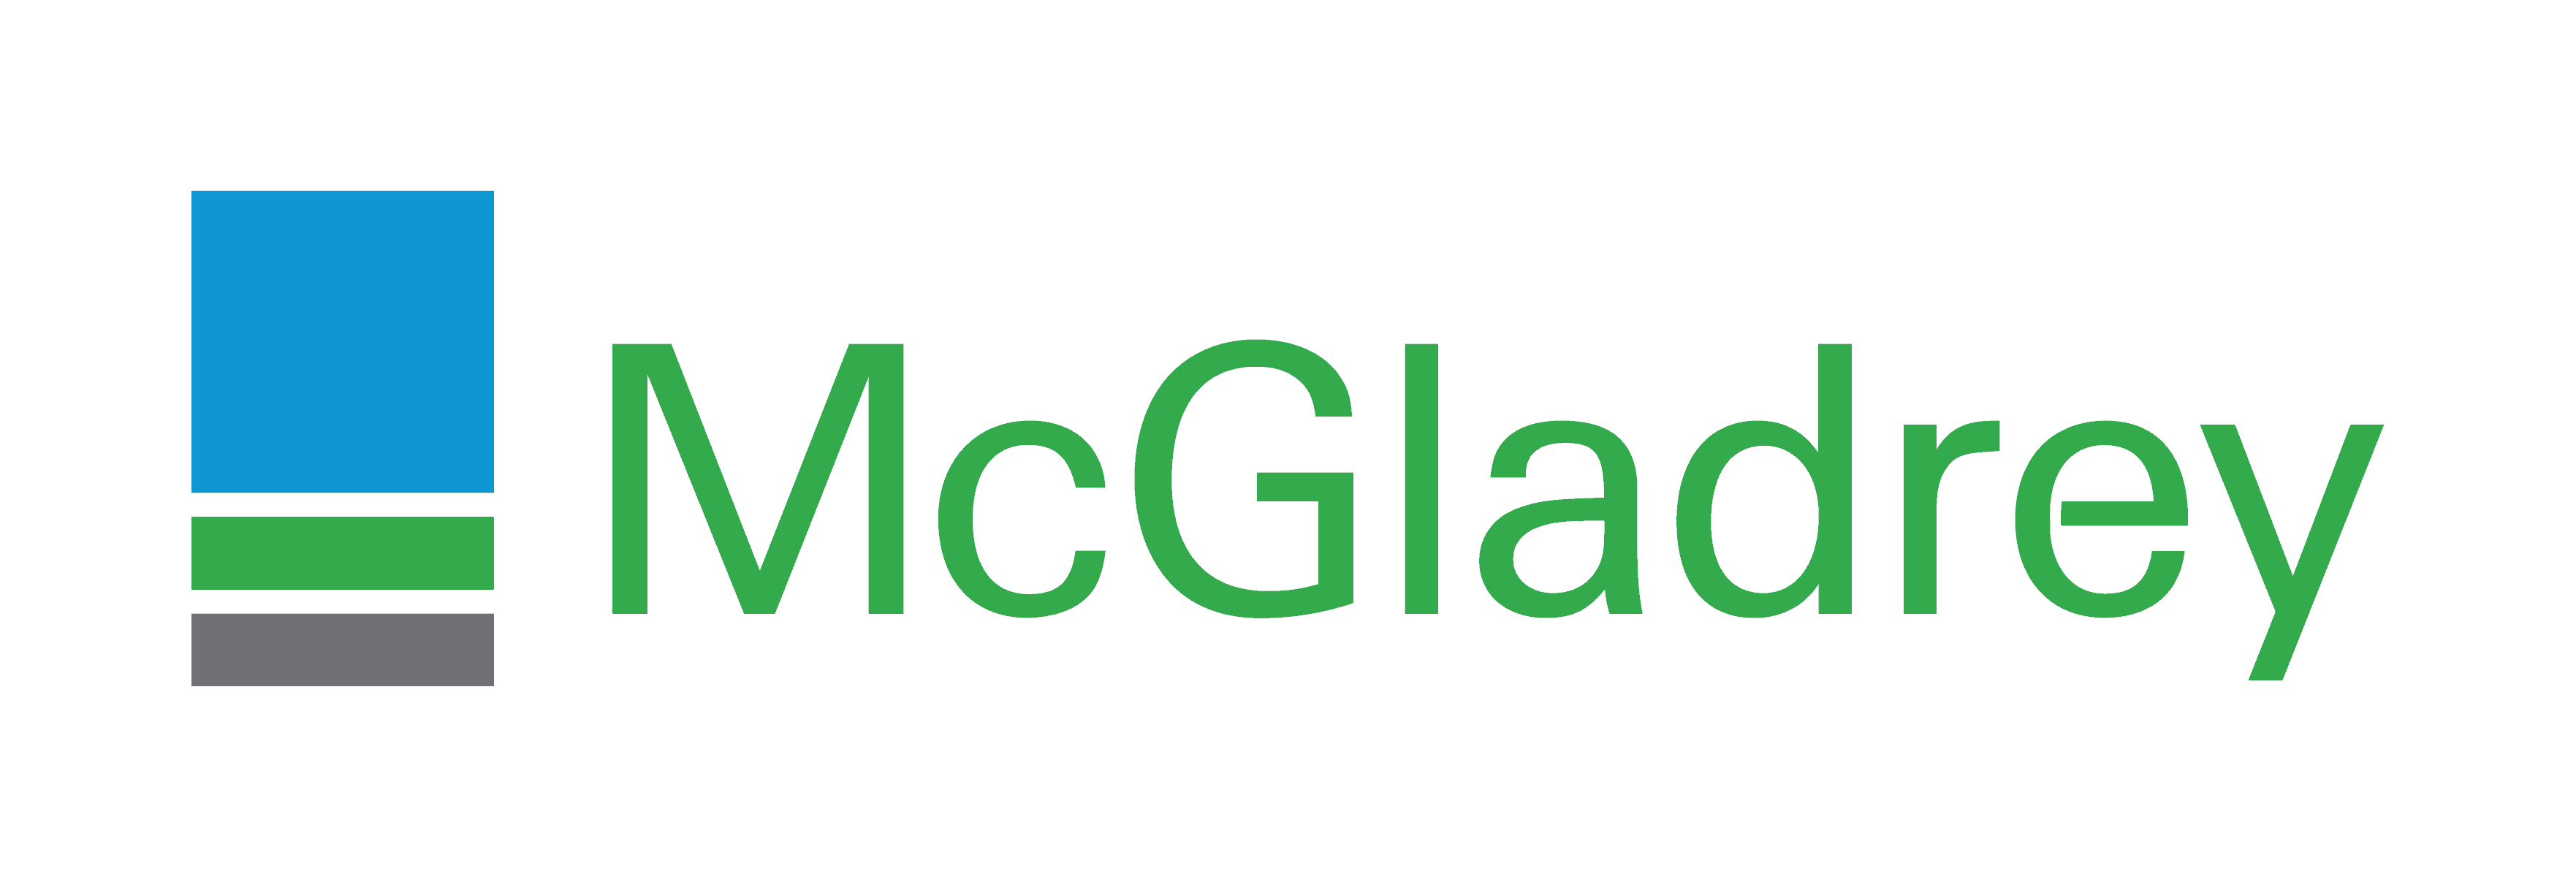 McGladrey_Logo.png